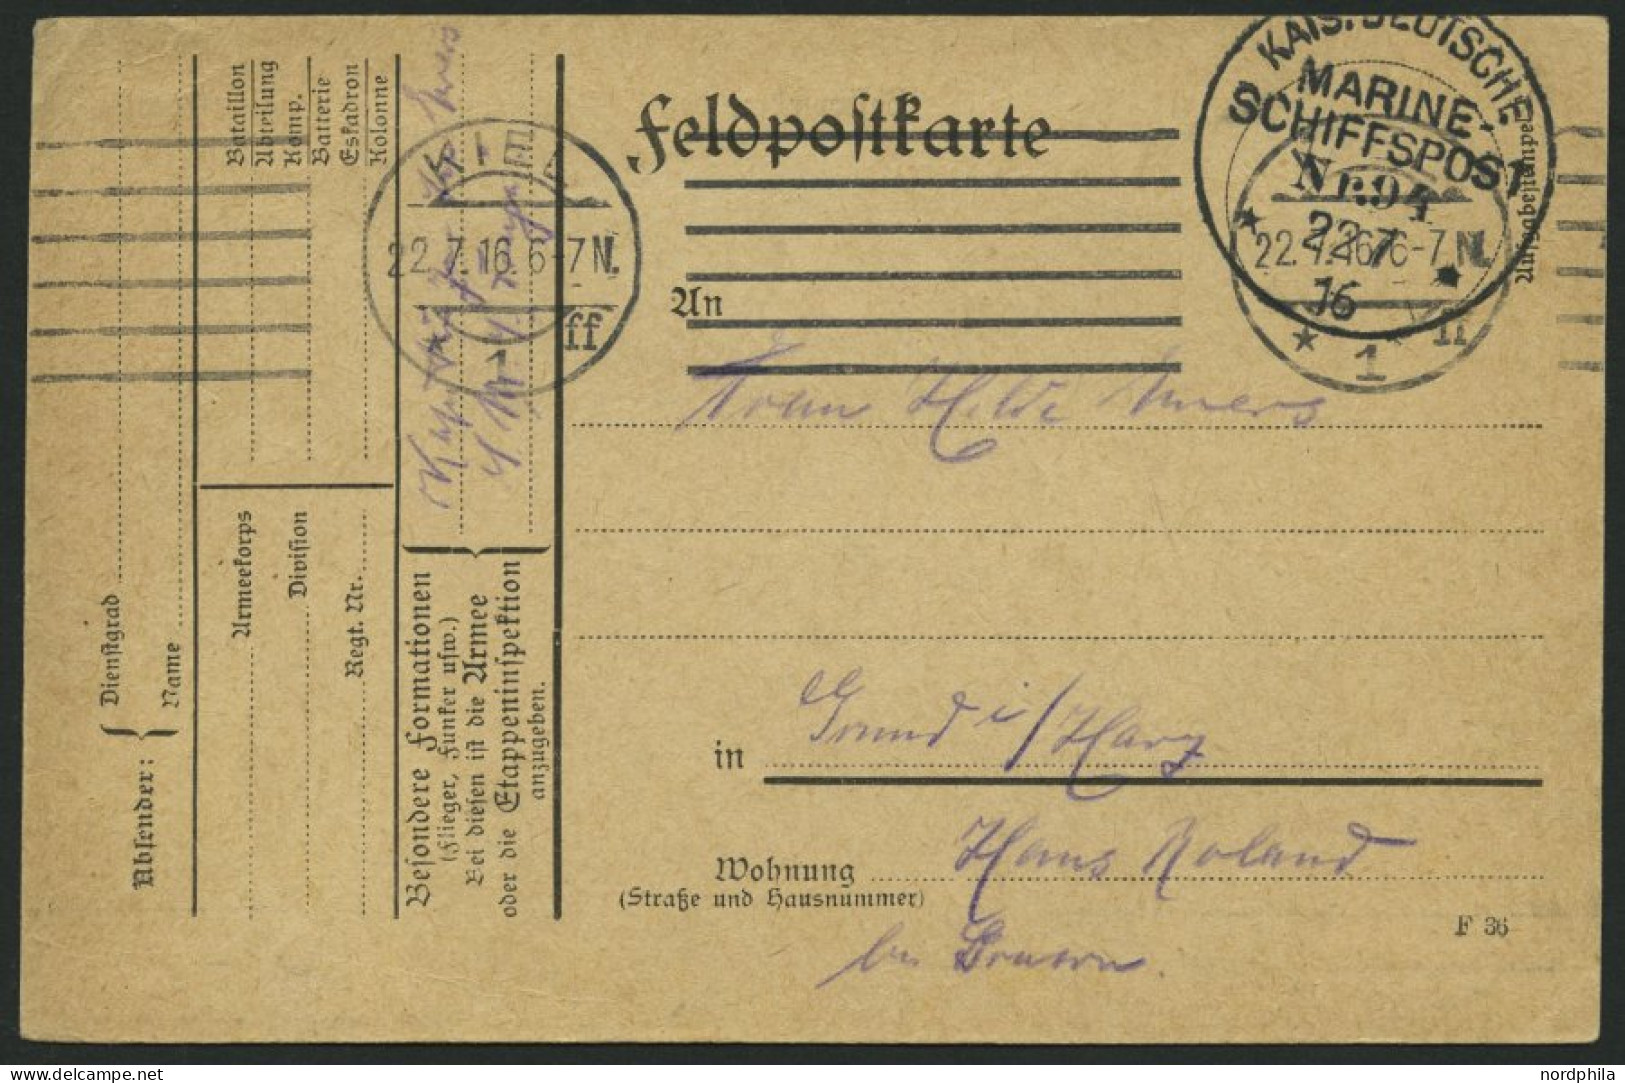 MSP VON 1914 - 1918 94 (Großer Kreuzer FREYA), 22.7.1916, Feldpostkarte Von Bord Der Freya, Pracht - Marítimo